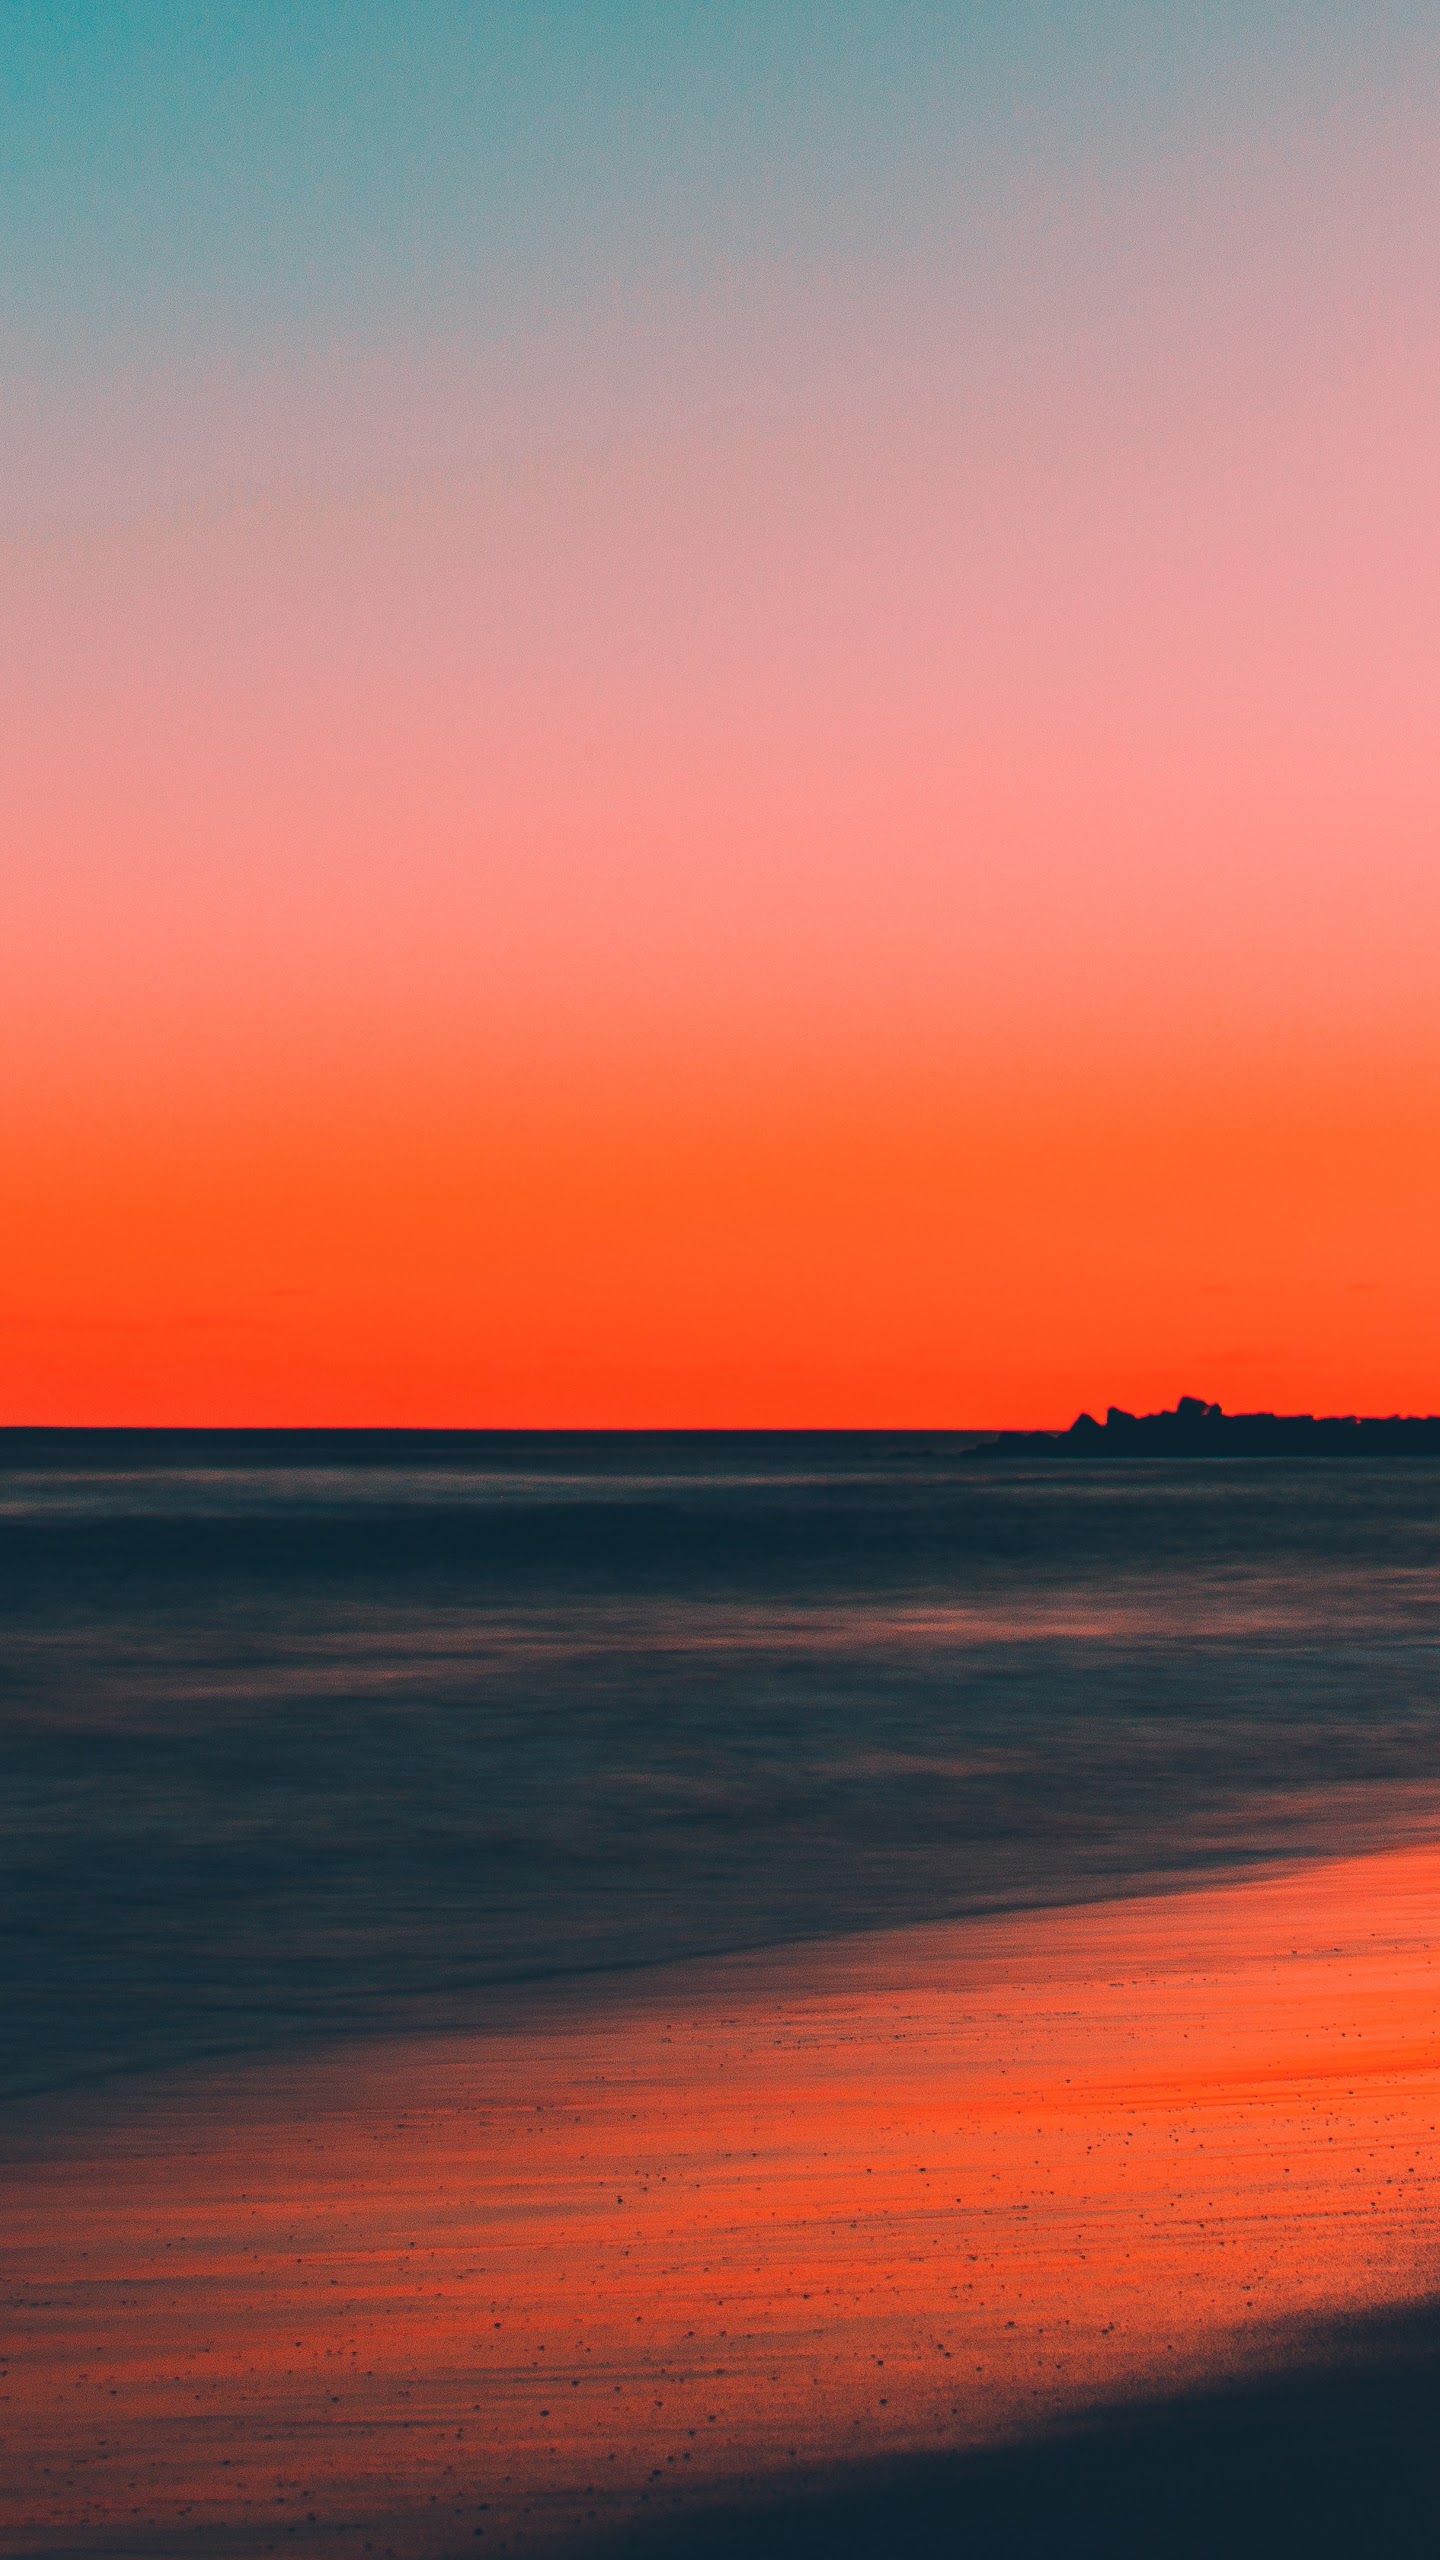 Sunset Beach Sea Horizon Scenery 8K Wallpaper